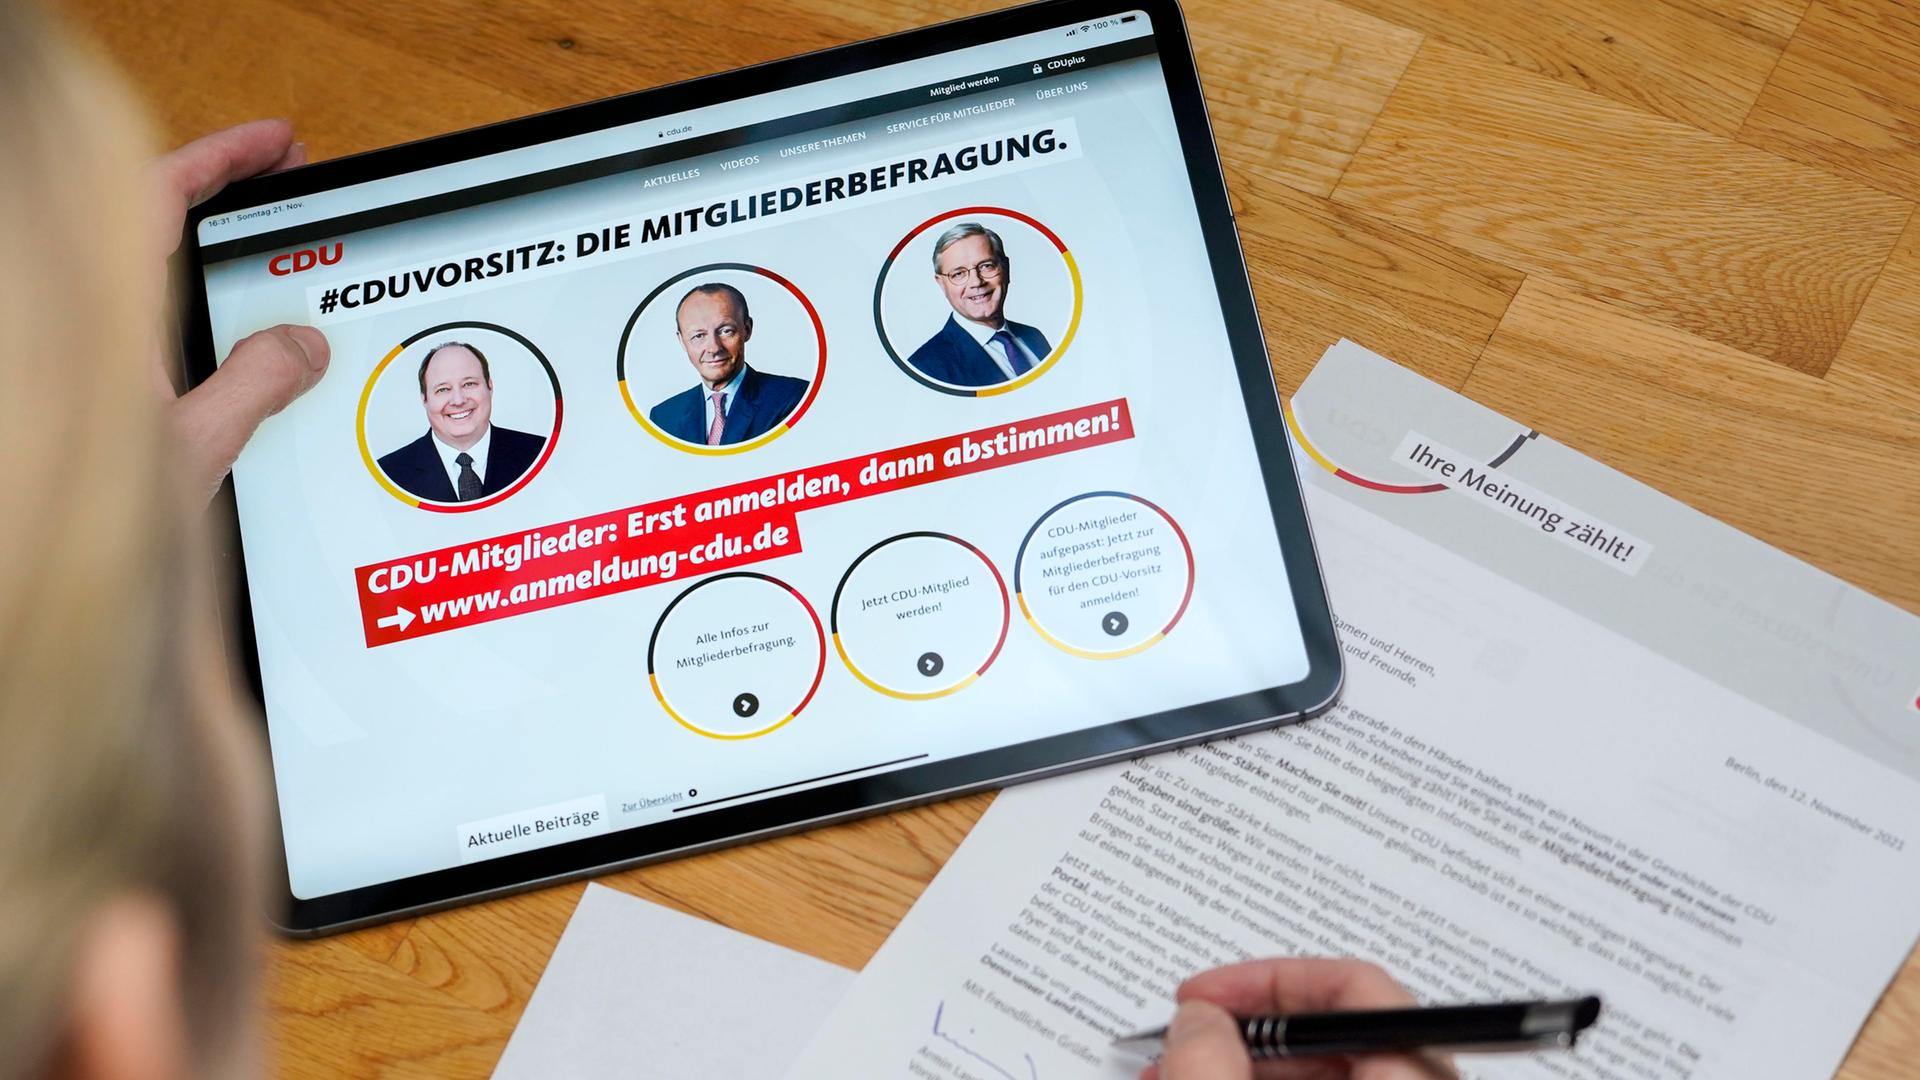 Die CDU-Mitgliederbefragung mit drei Kandidaten für den Parteivorsitz ist auf einem Tablet zu sehen.